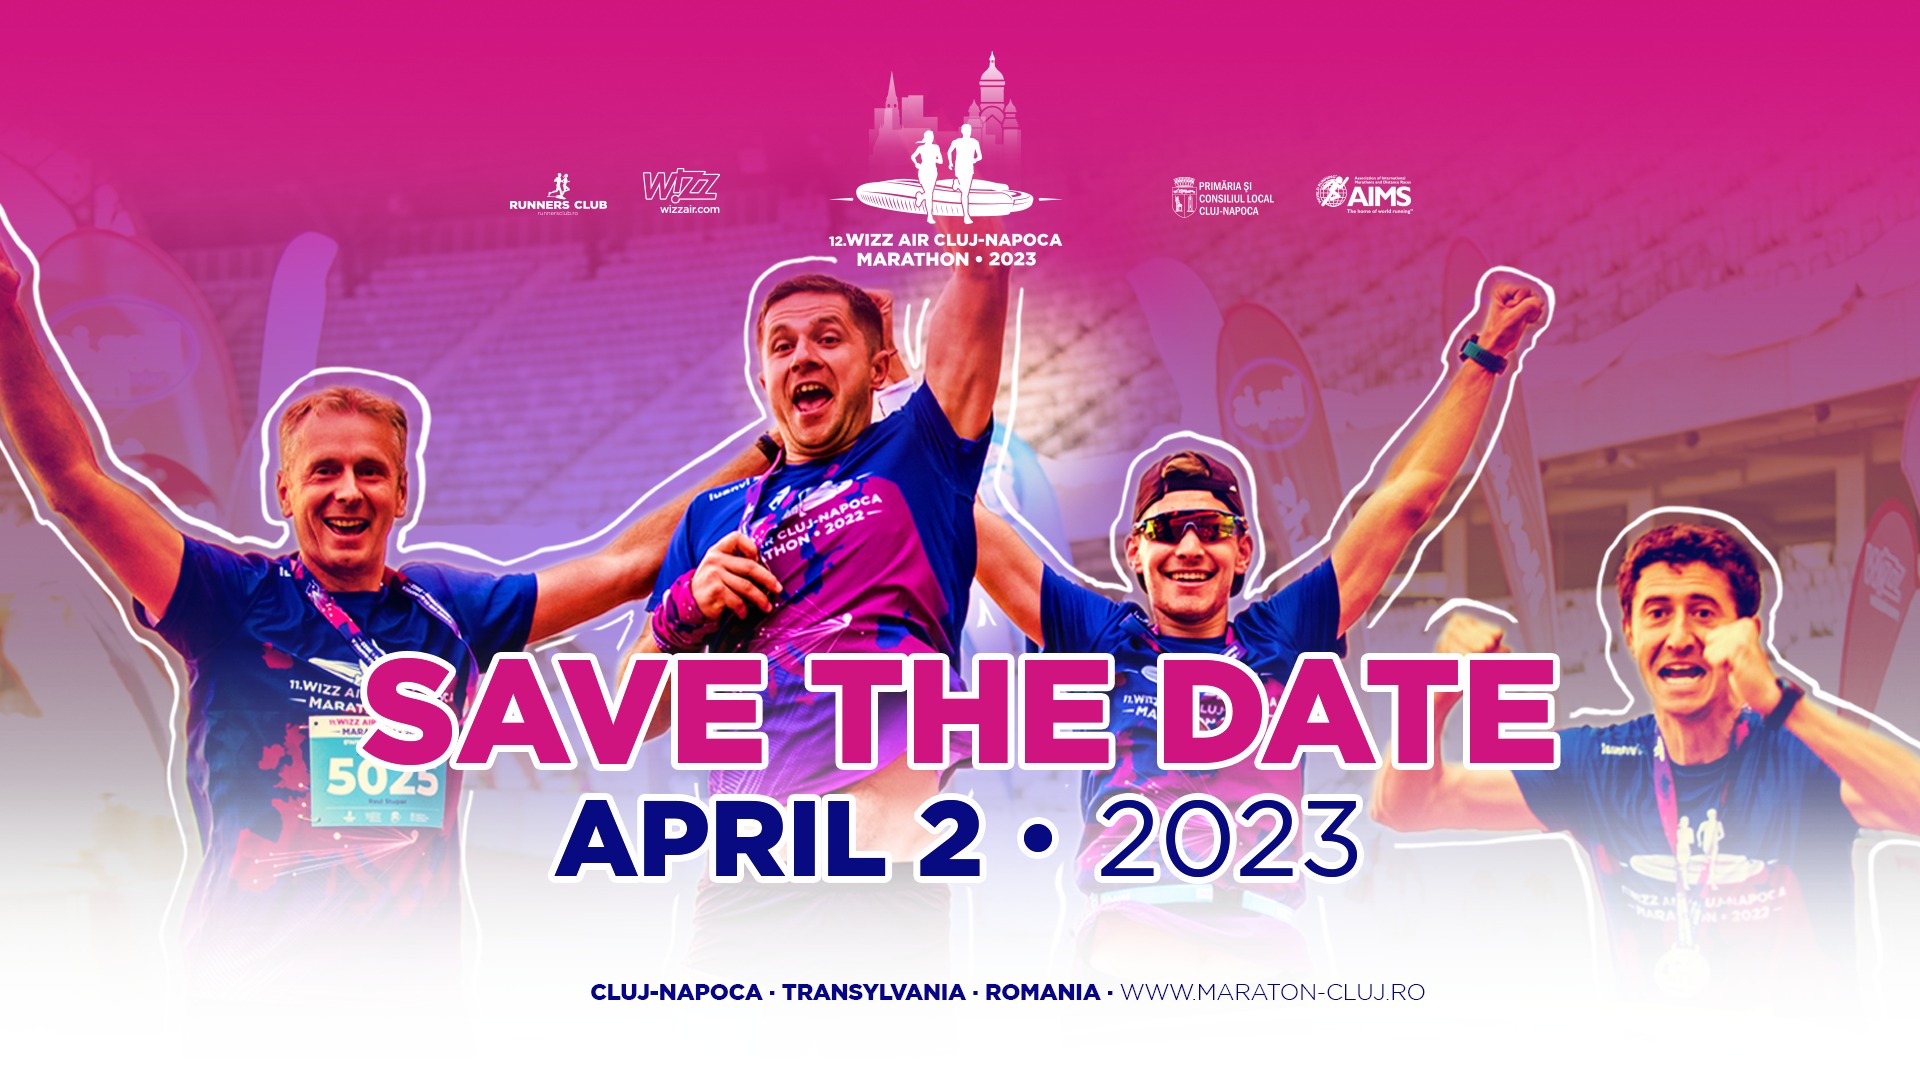 Wizz Air Cluj-Napoca Marathon